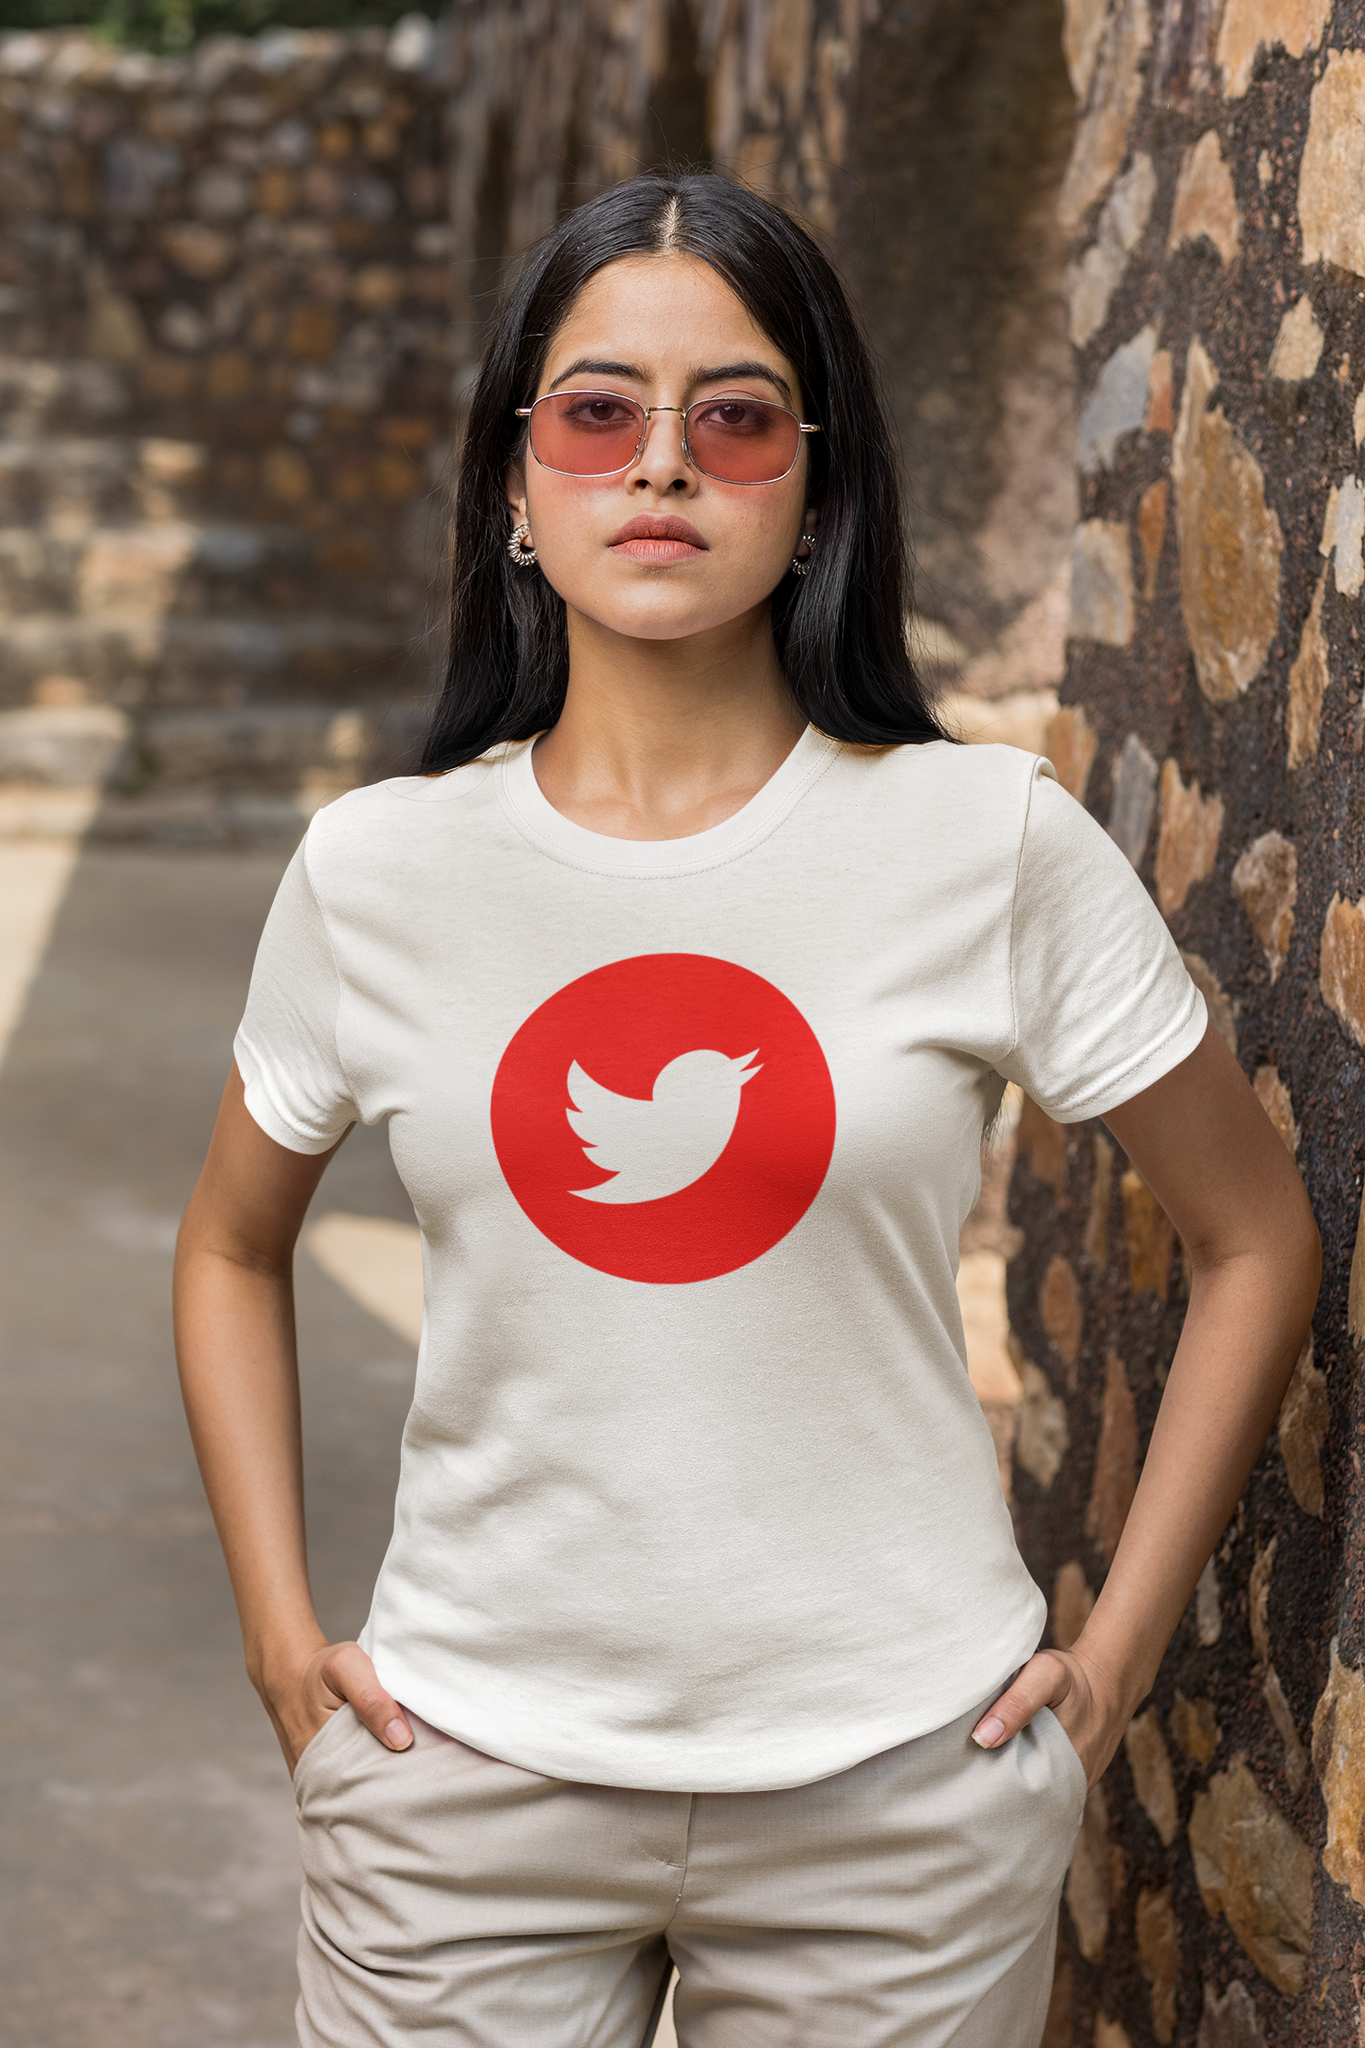 Twitter Red/White T-Shirt Women